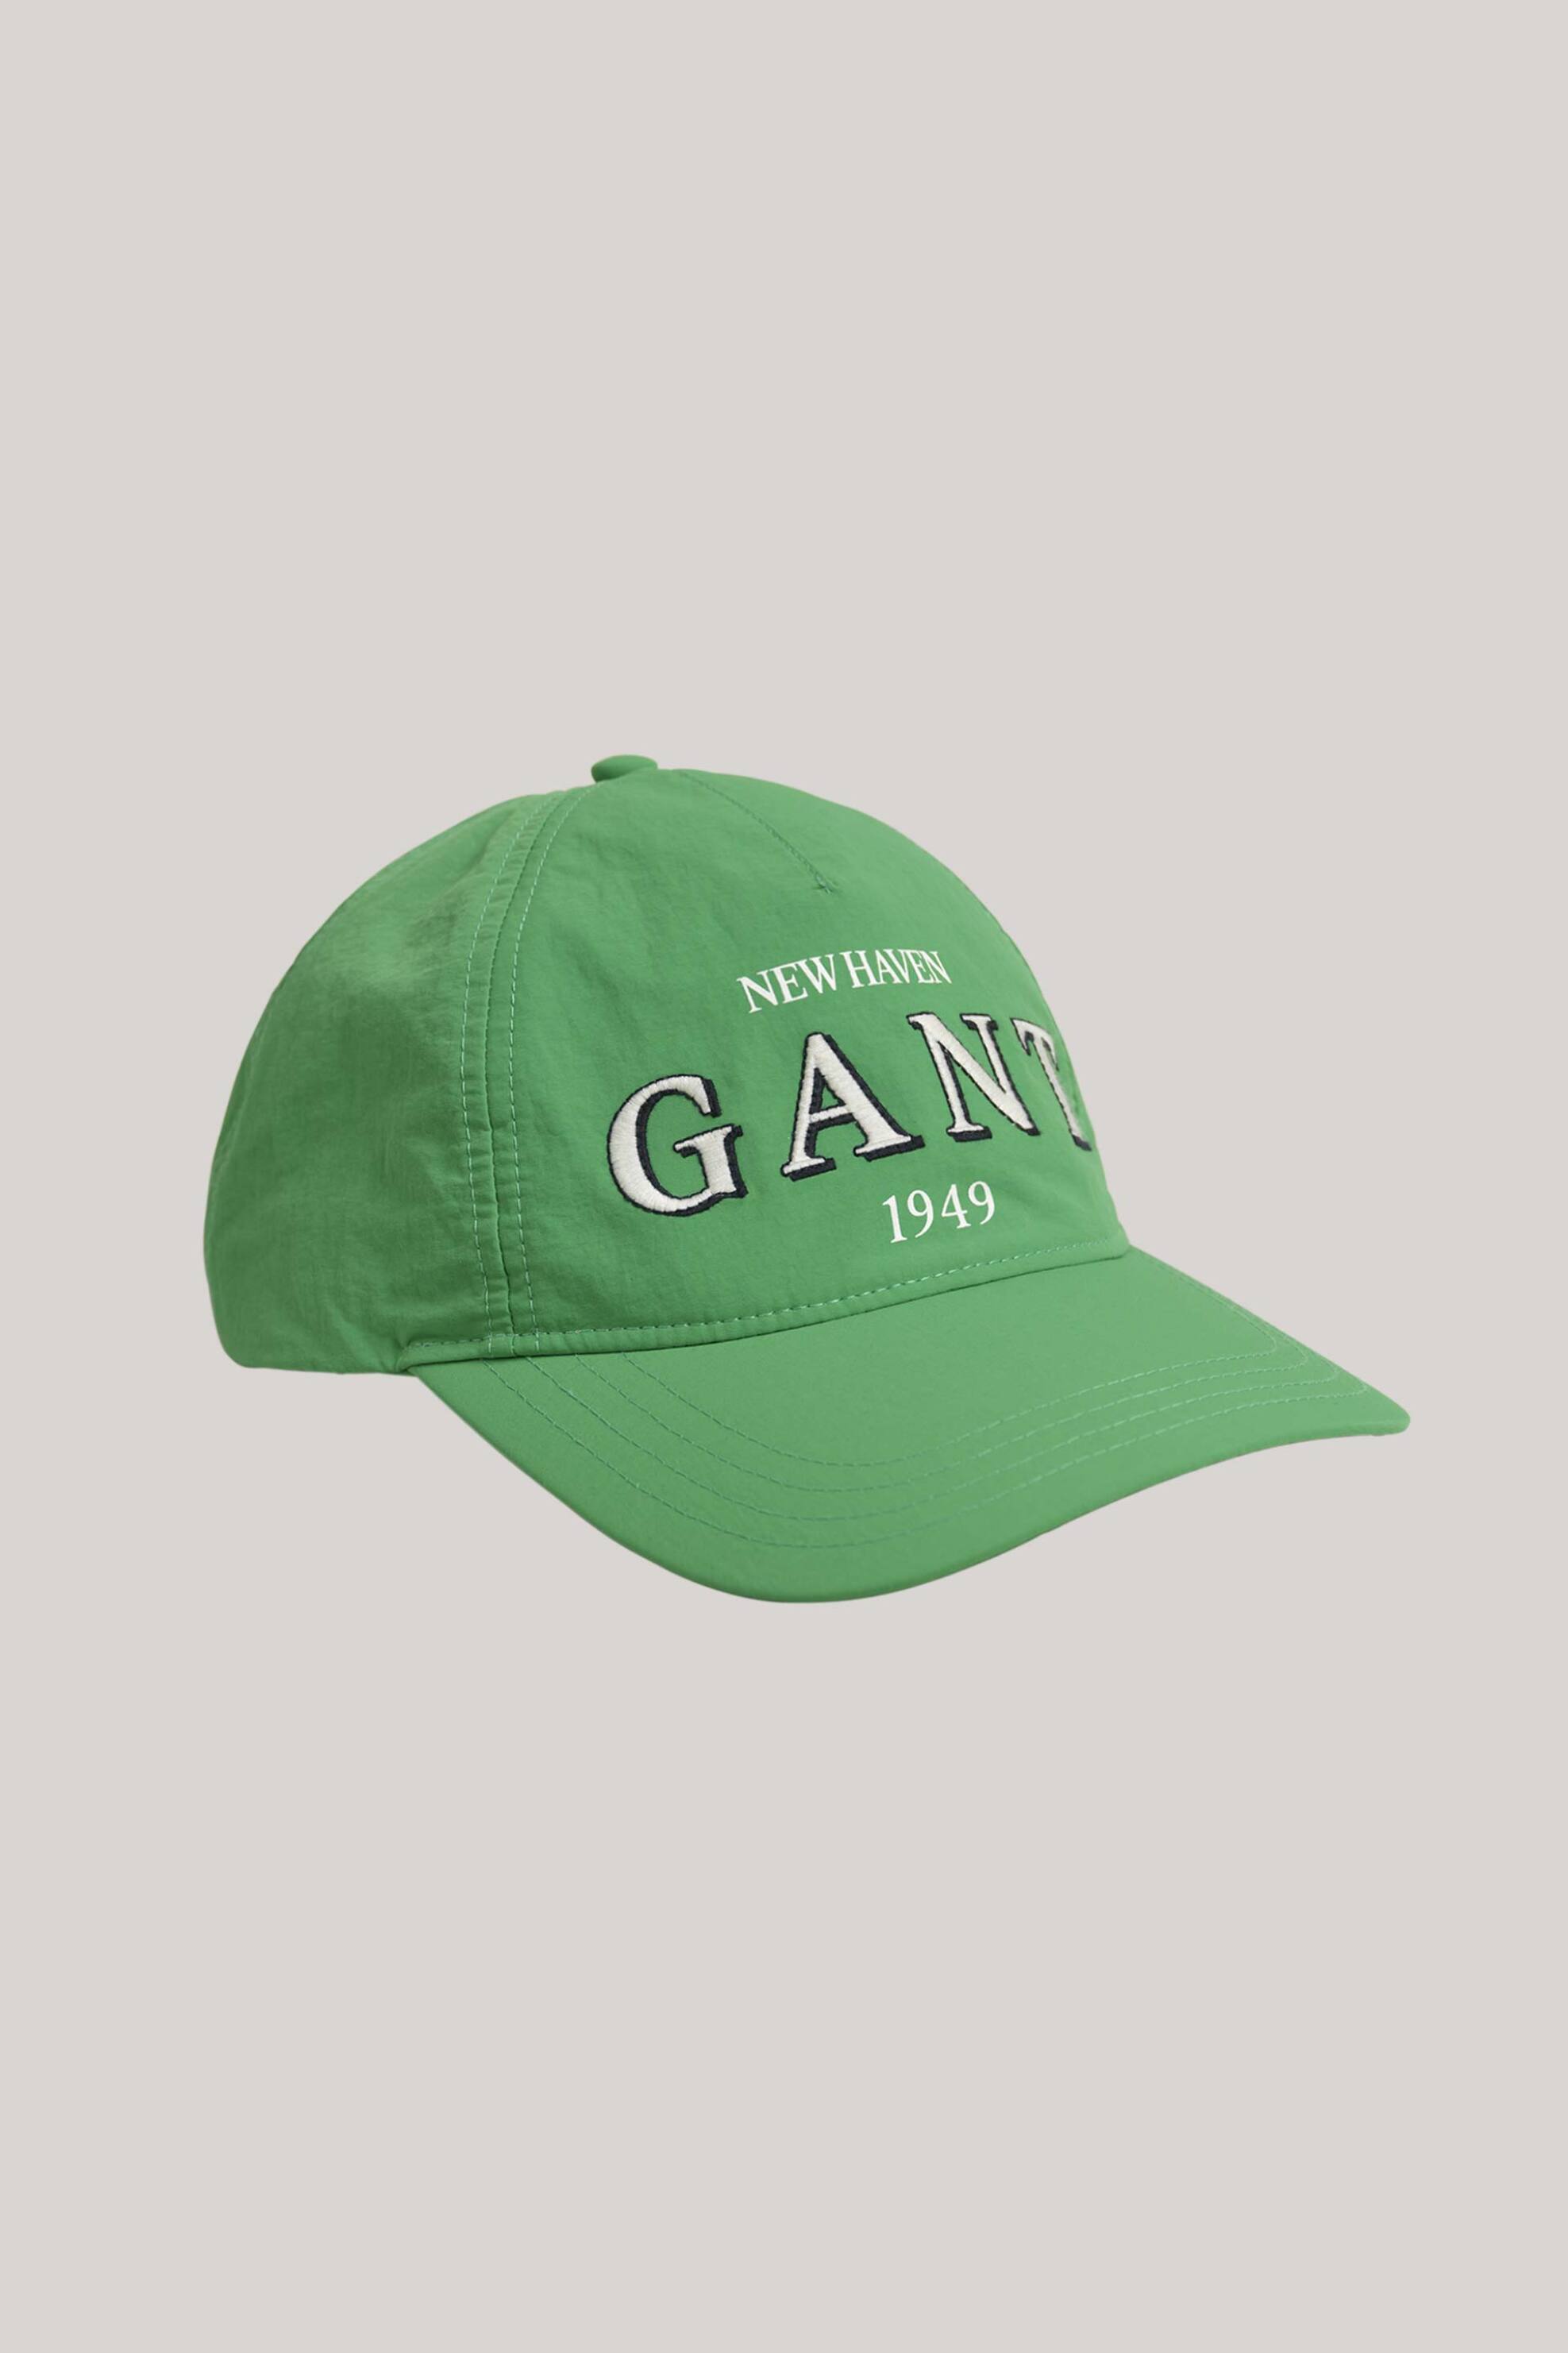 Ανδρική Μόδα > Ανδρικά Αξεσουάρ > Ανδρικά Καπέλα & Σκούφοι Gant ανδρικό καπέλο μονόχρωμο με contrast graphic κεντημένο λογότυπο - 9900103 Πράσινο Ανοιχτό